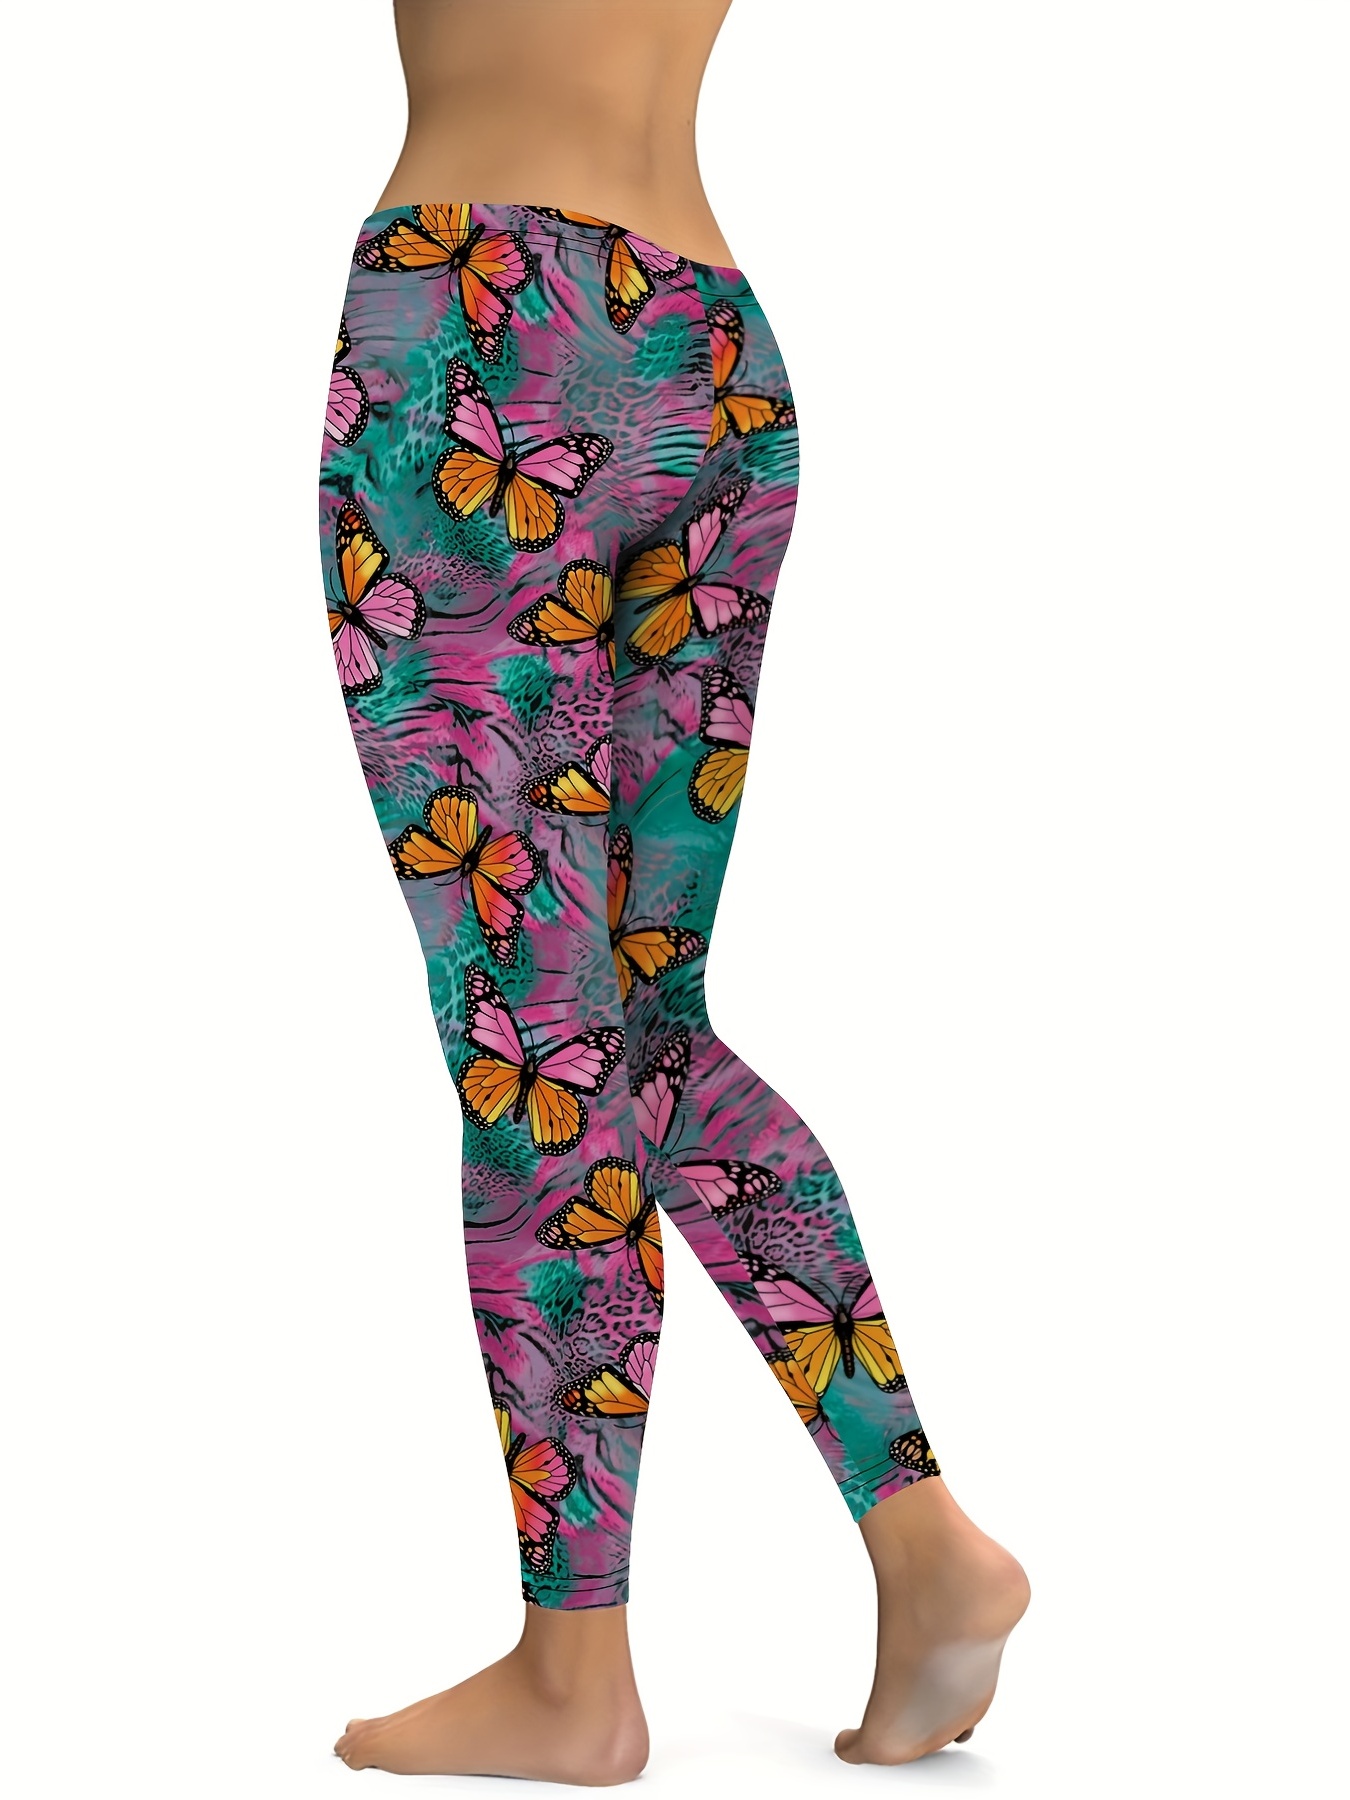 Women's Workout Leggings Yoga Trousers, Women's Butterfly Prints